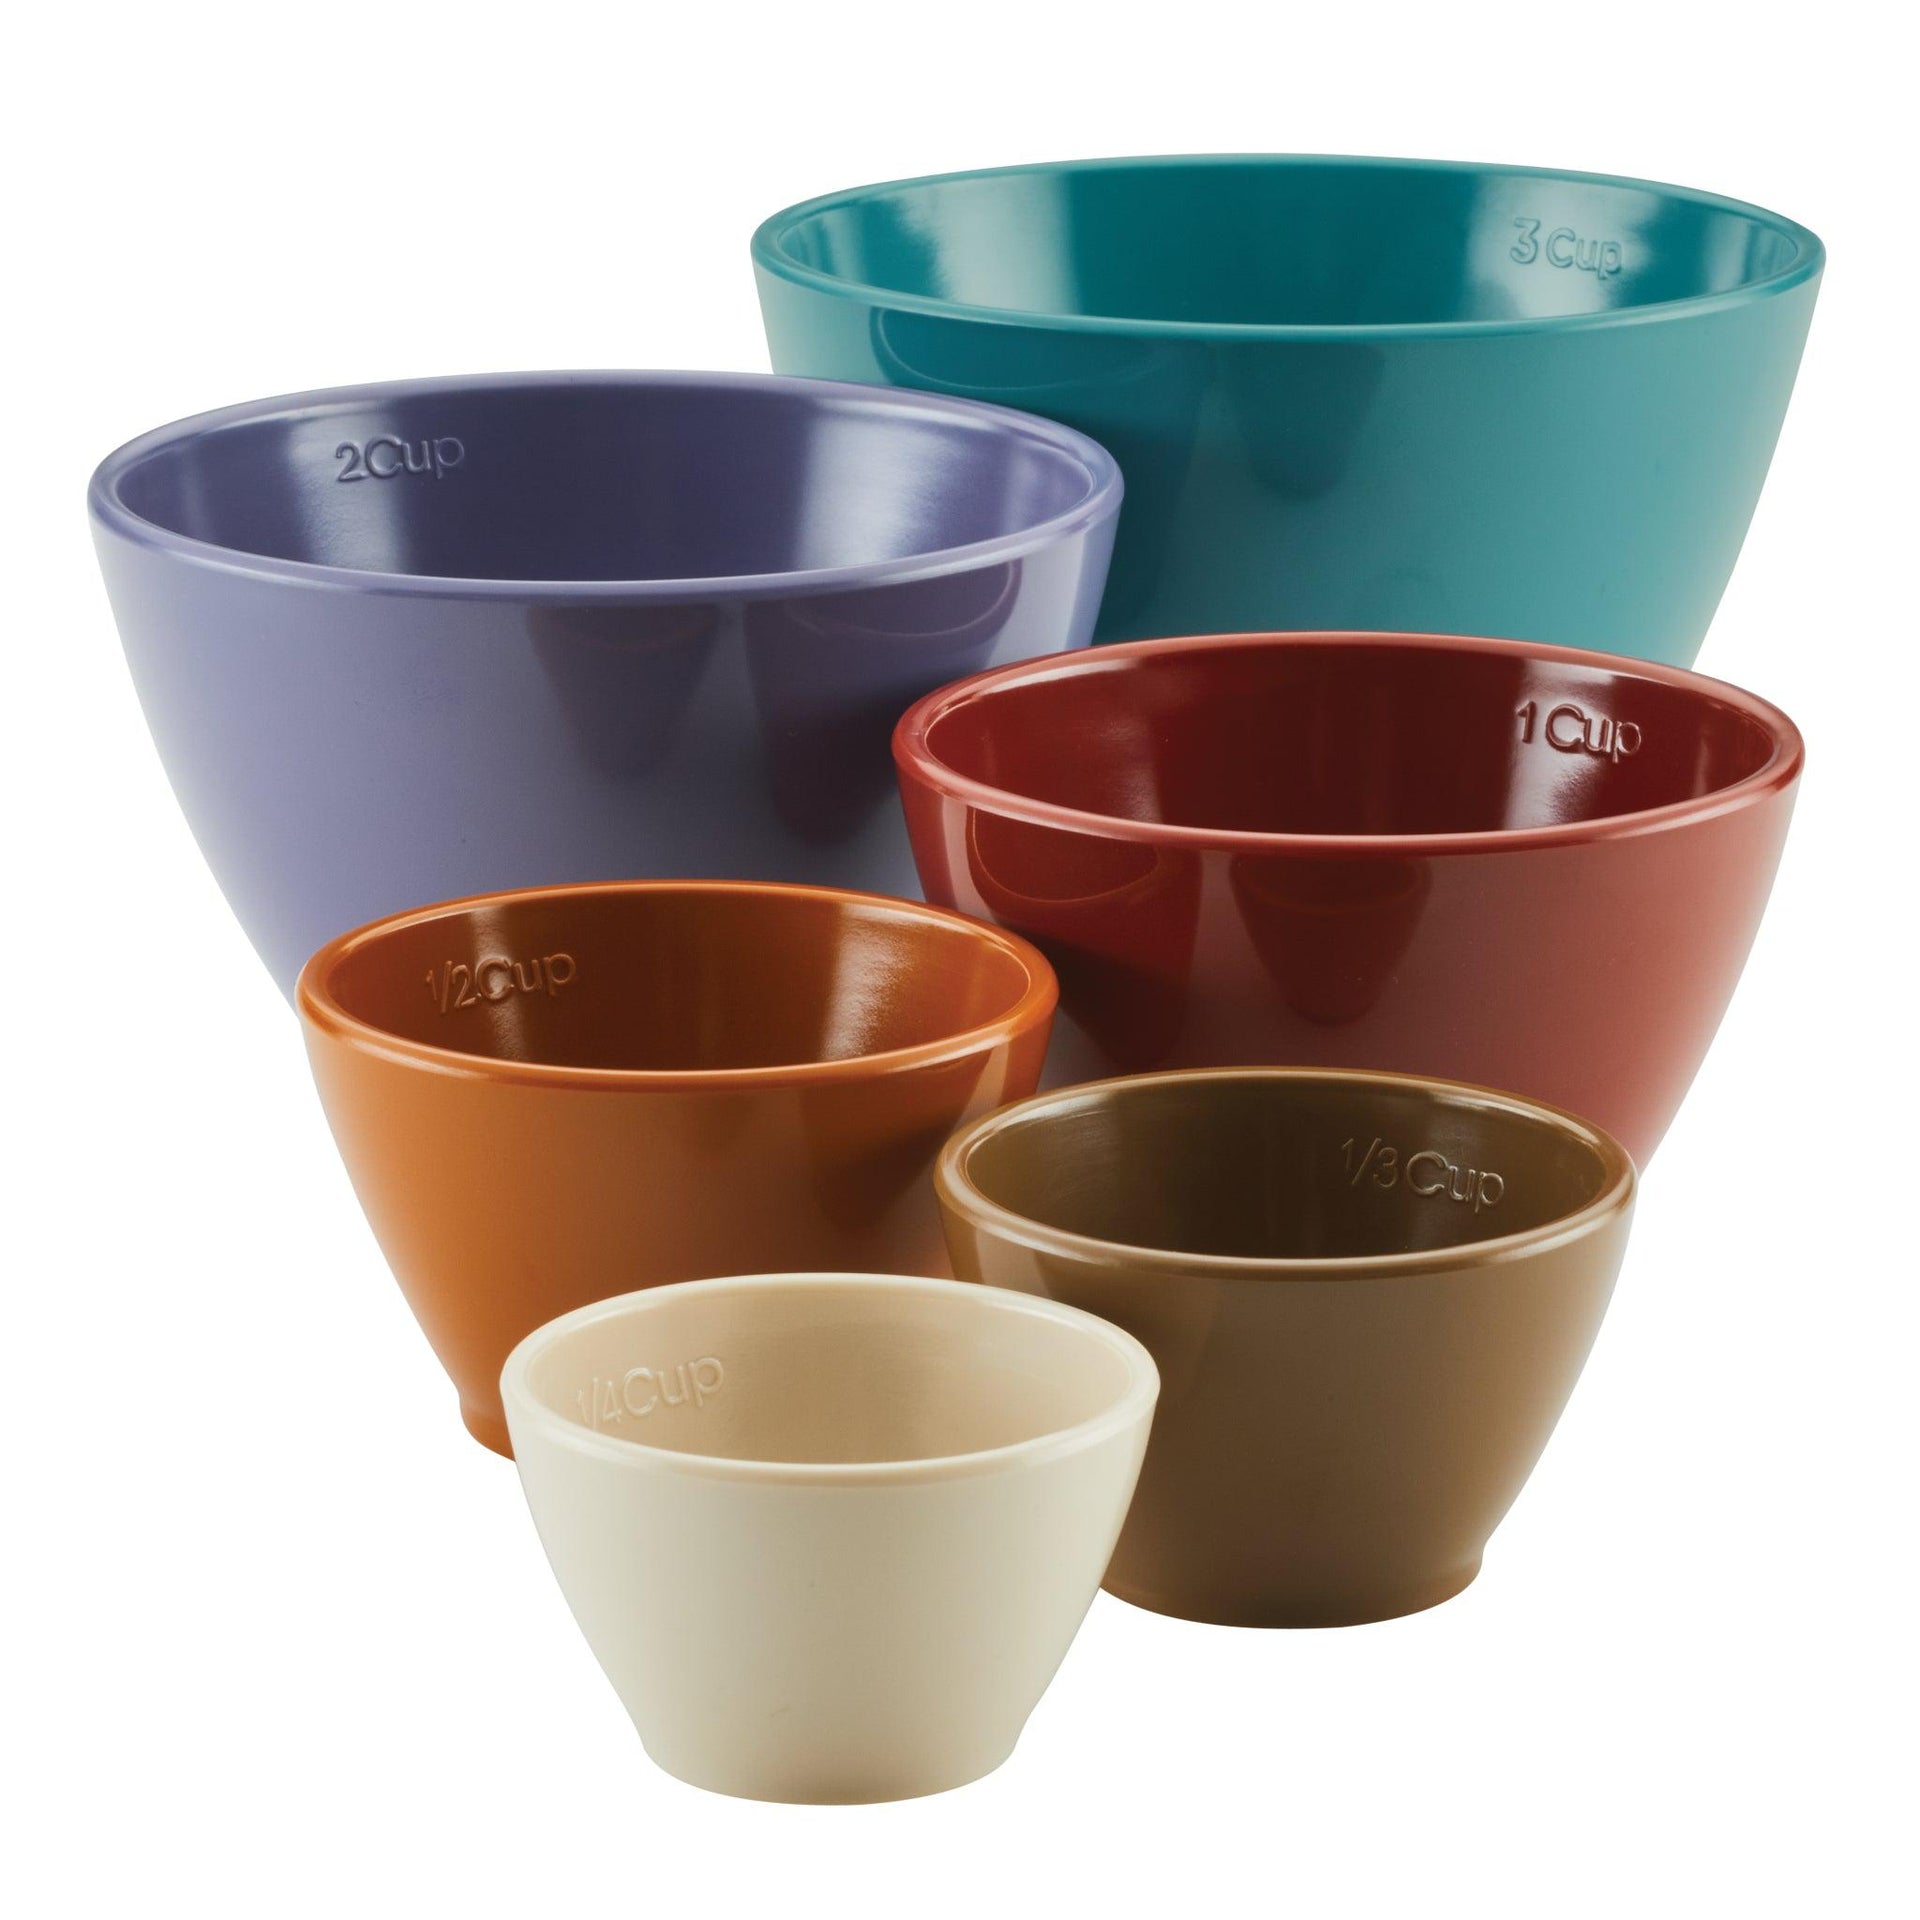 Flour Shop Melamine Mixing Bowls with Lids - Set of 6  Melamine mixing  bowls, Mixing bowls, Cookware and bakeware